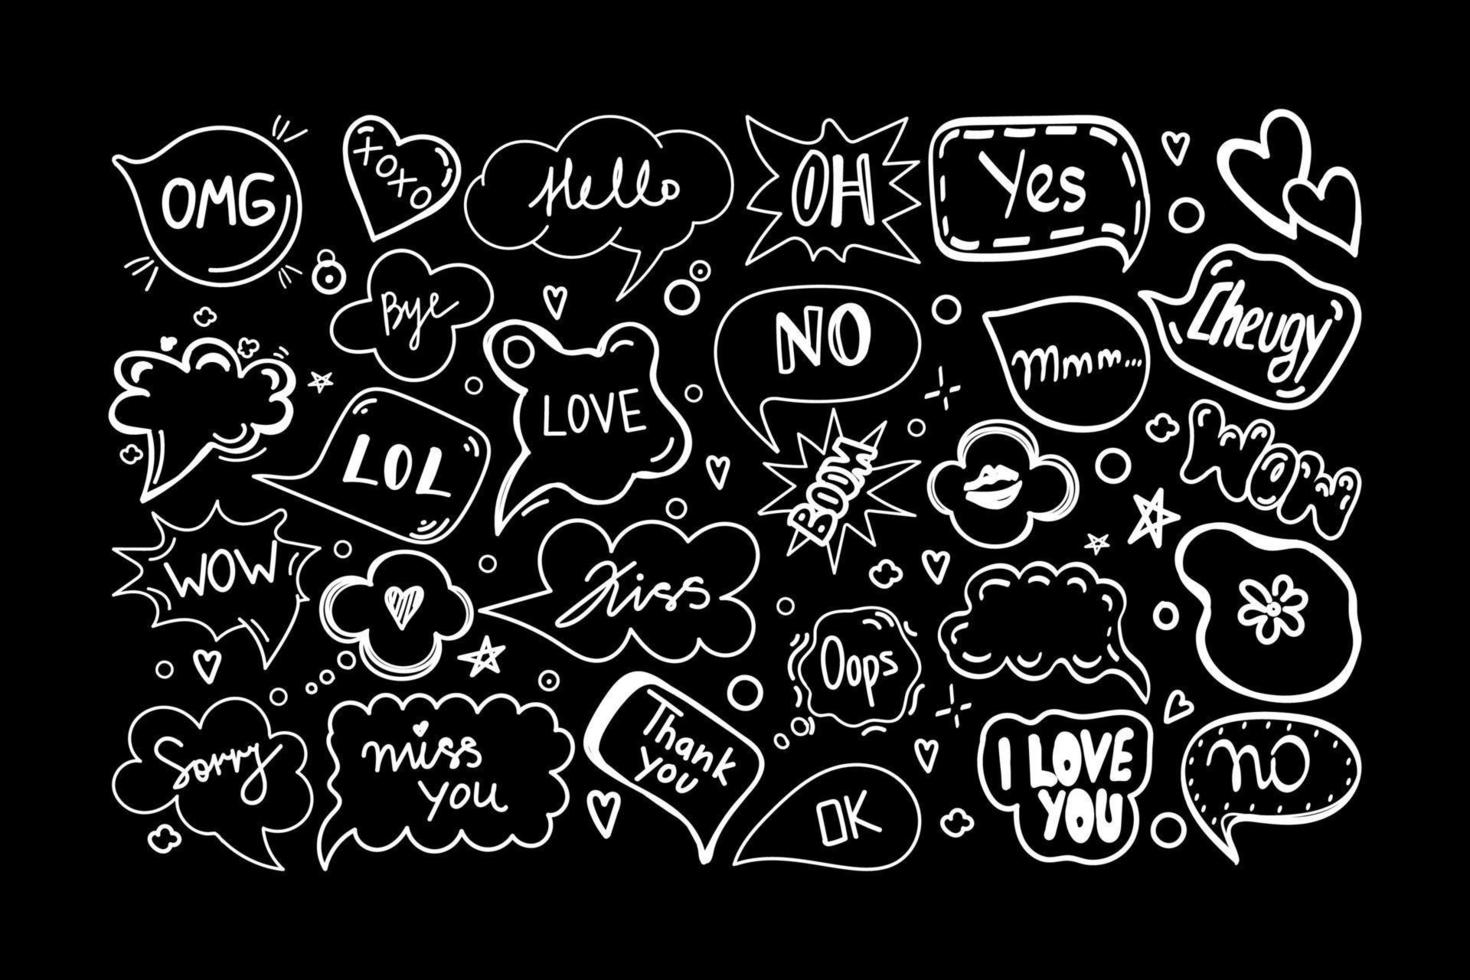 een set tekstballonnen met handgetekende dialoogwoorden in doodle-stijl. witte silhouetten op een zwarte achtergrond. hallo, liefde, sorry, liefde, kus, nee, doei, enz. spraakpatronen. vector illustratie